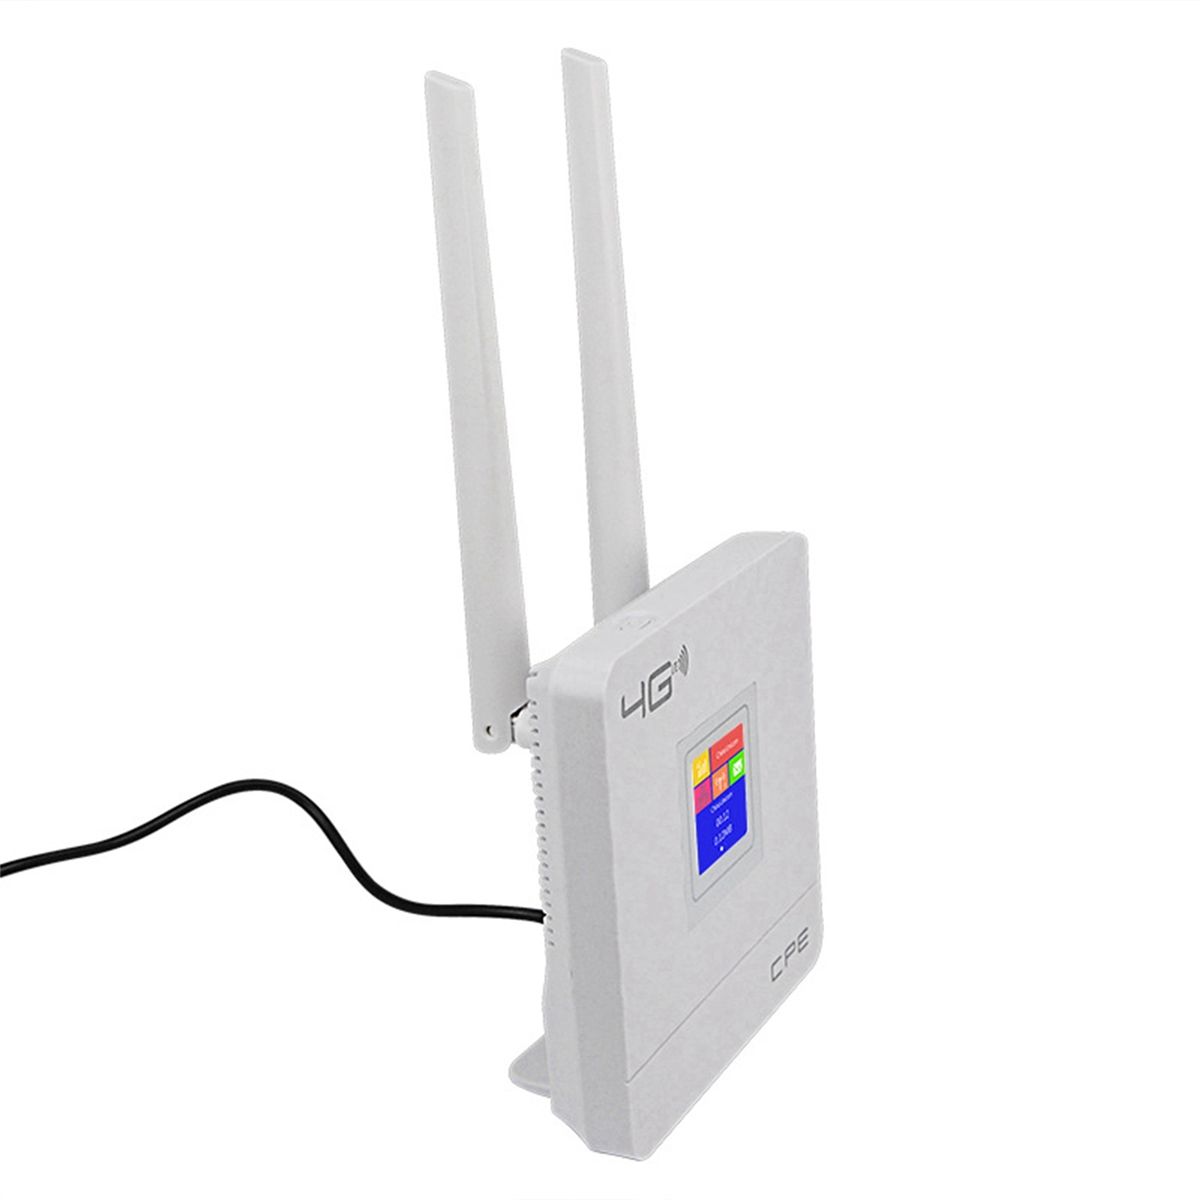 Cpe 4g wi fi. Wi-Fi роутер cpe903-3. Роутер 4g LTE CPE. 4g Wi-Fi роутер LTE CPE. Cpe903 4g Wi-Fi.